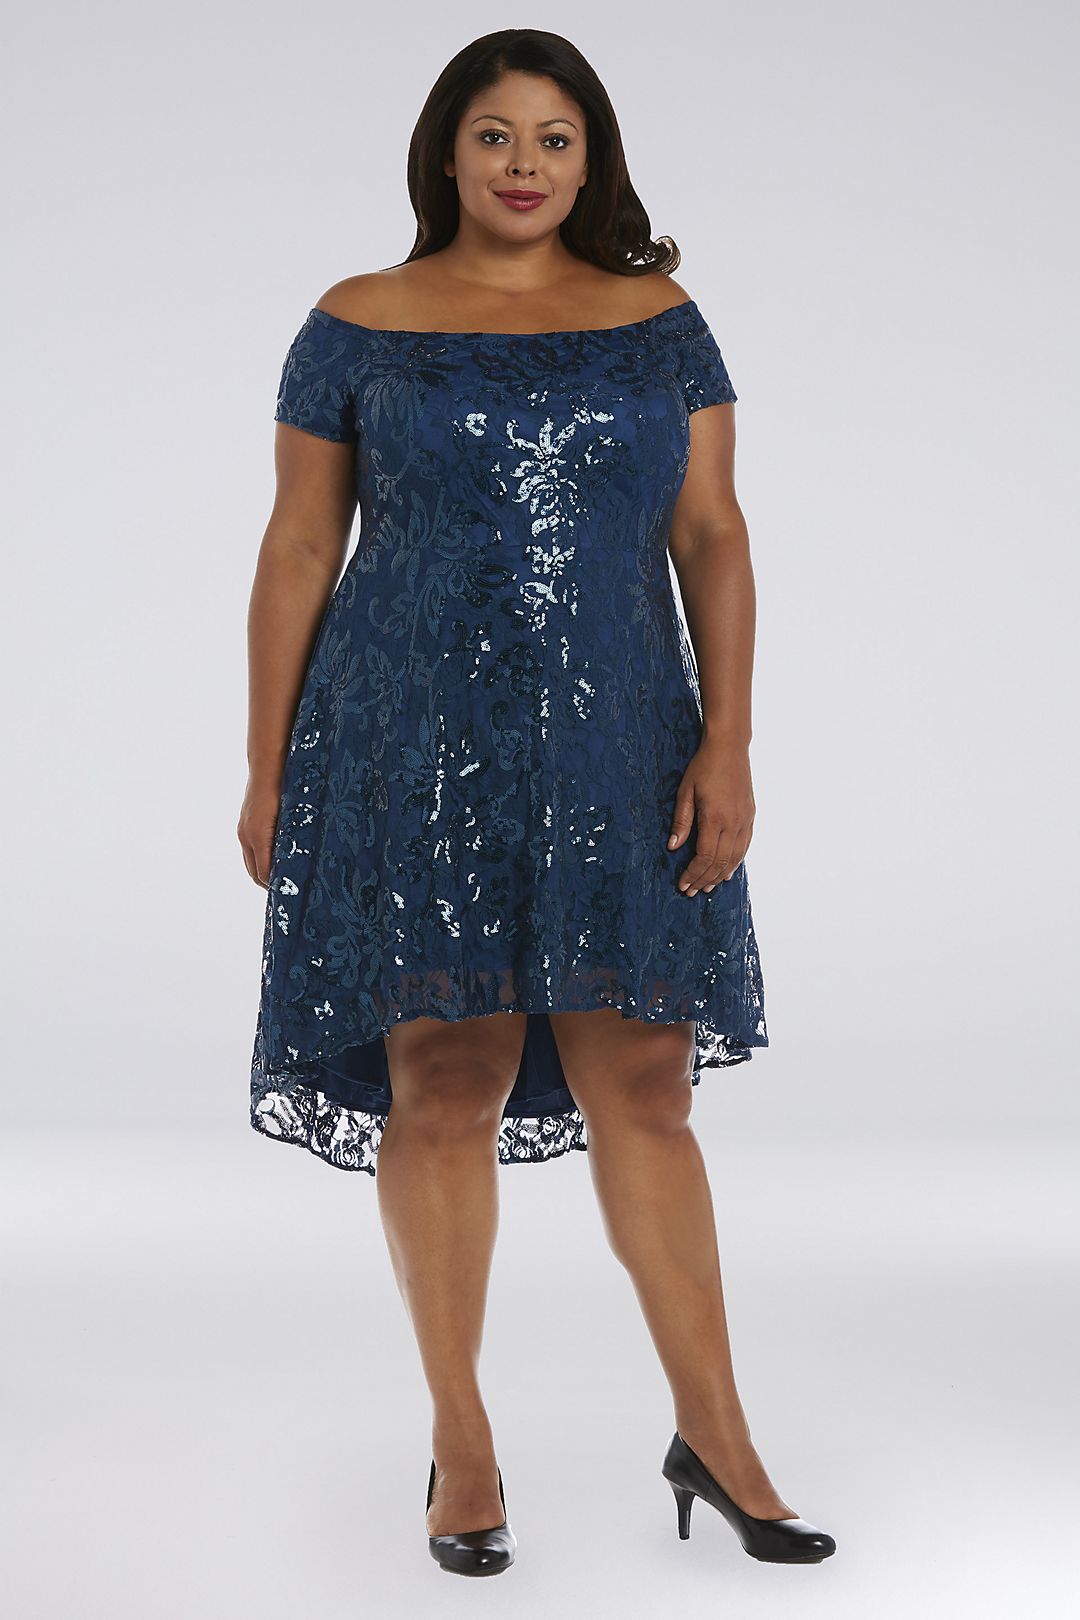 Short Sequin Lace Off-the-Shoulder Plus Size Dress Image 1